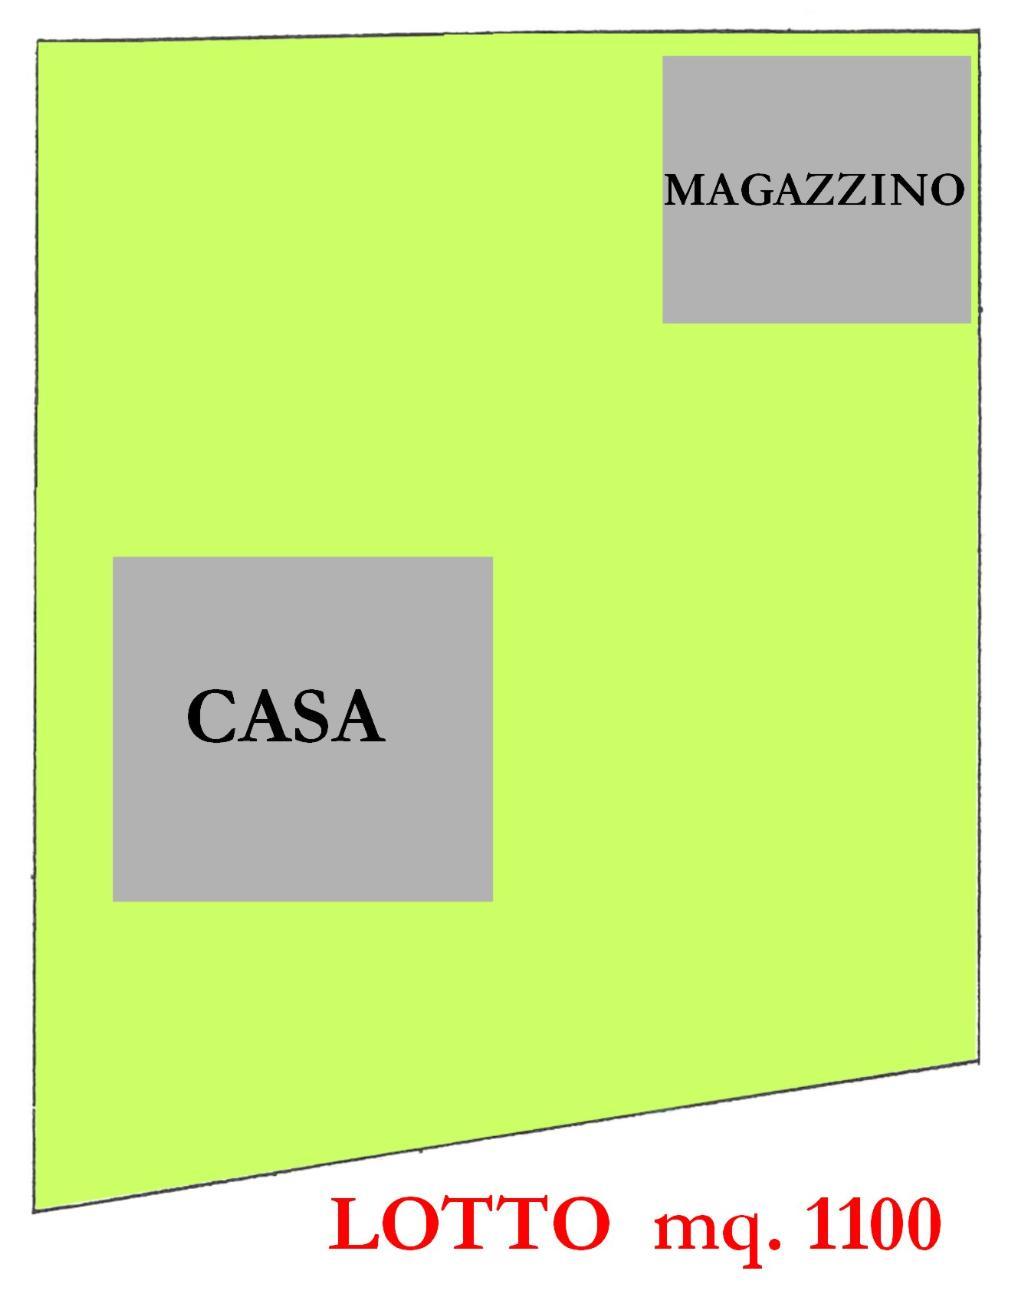 Vendita di un terreno edificabile a Cesena, di oltre 2000 mq.